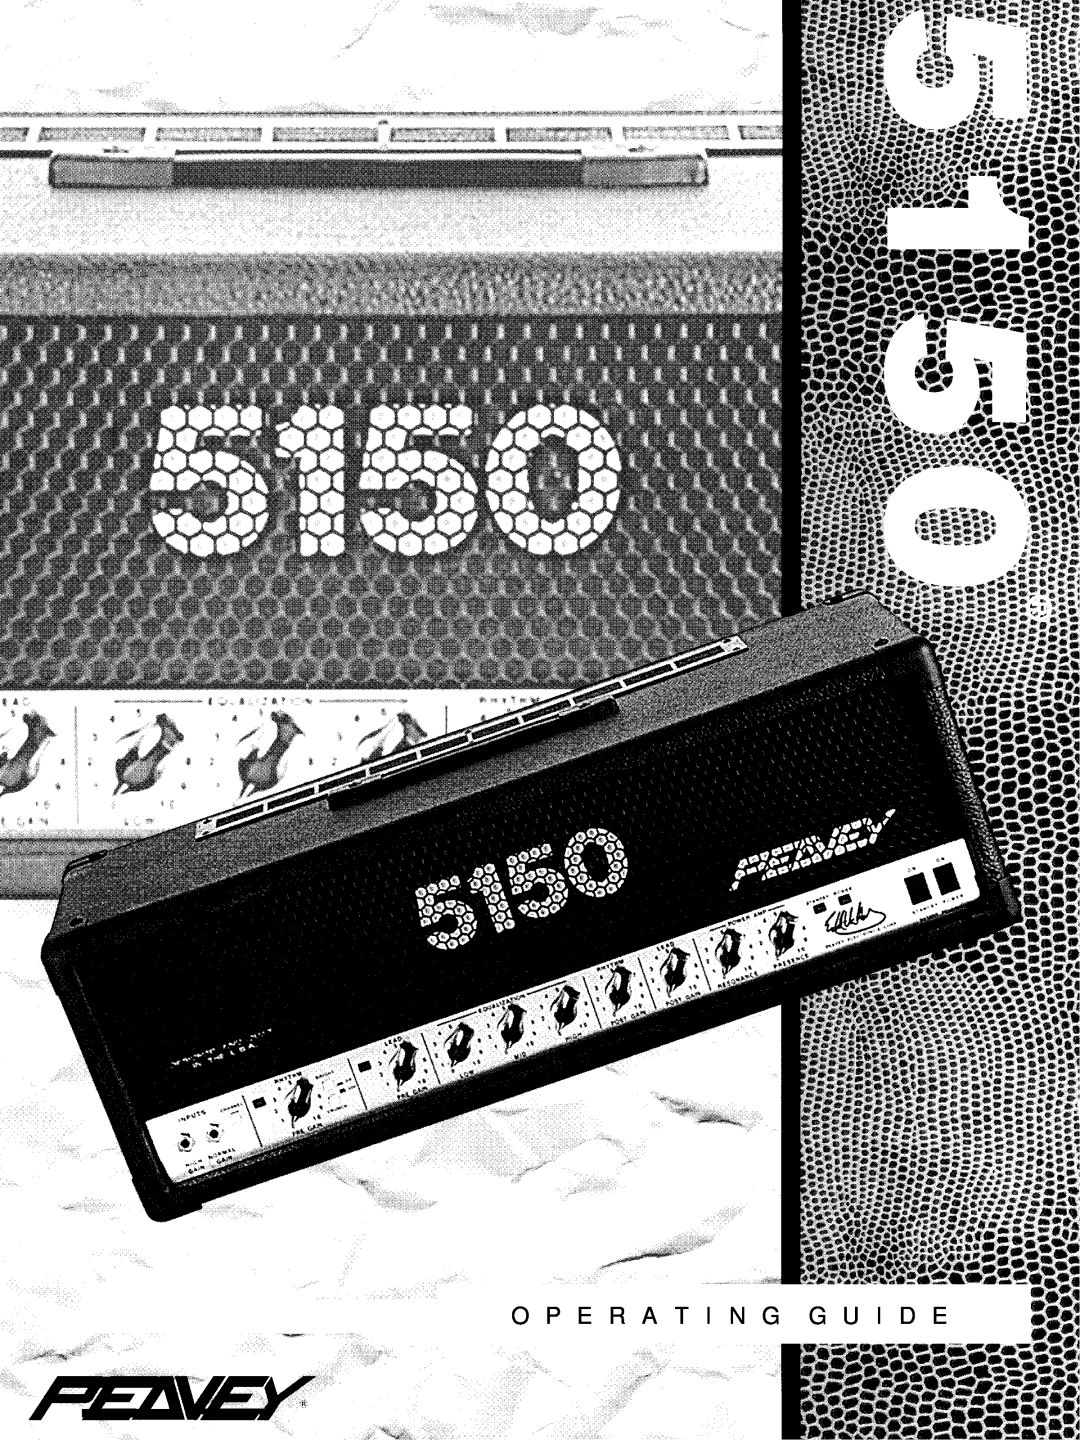 Peavey 5150 manual 